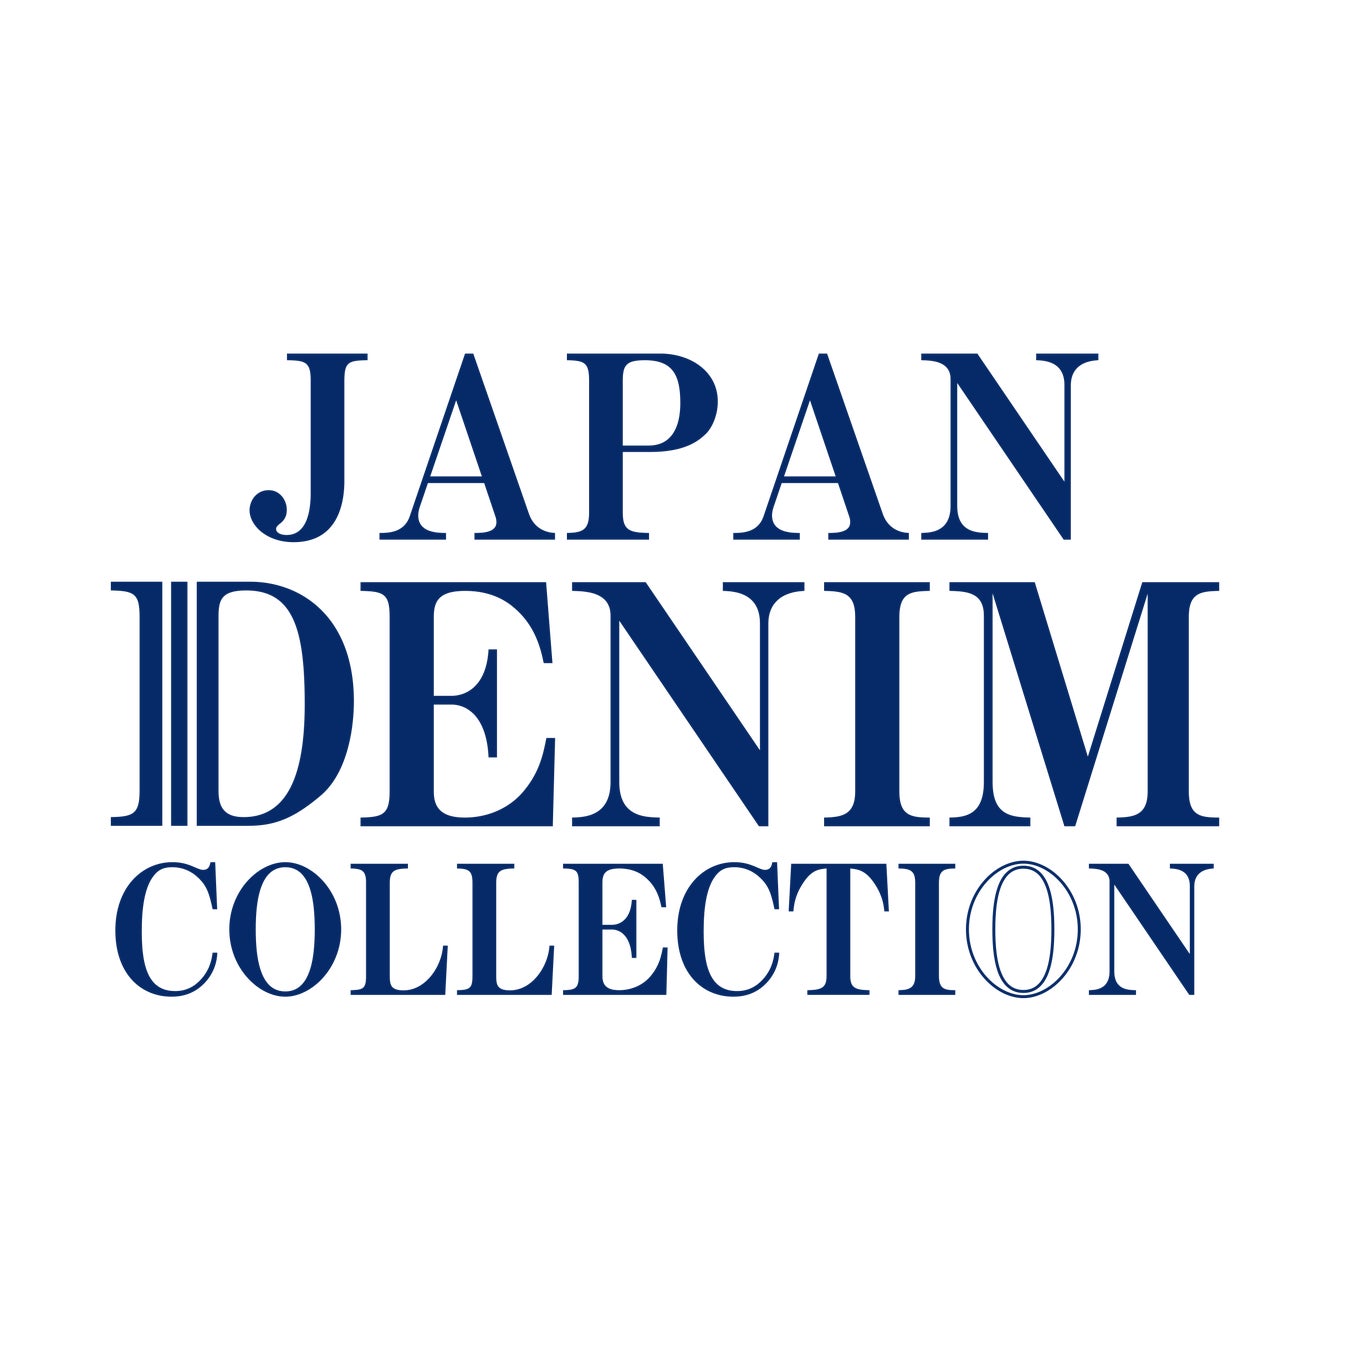 デニムの国おかやまで【JAPAN DENIM COLLECTION】開催決定！「デニムファッション」のみのコレクション。コンテストは男女混合で日本初開催。SDGsの最先端を実現する。★出演者募集中★